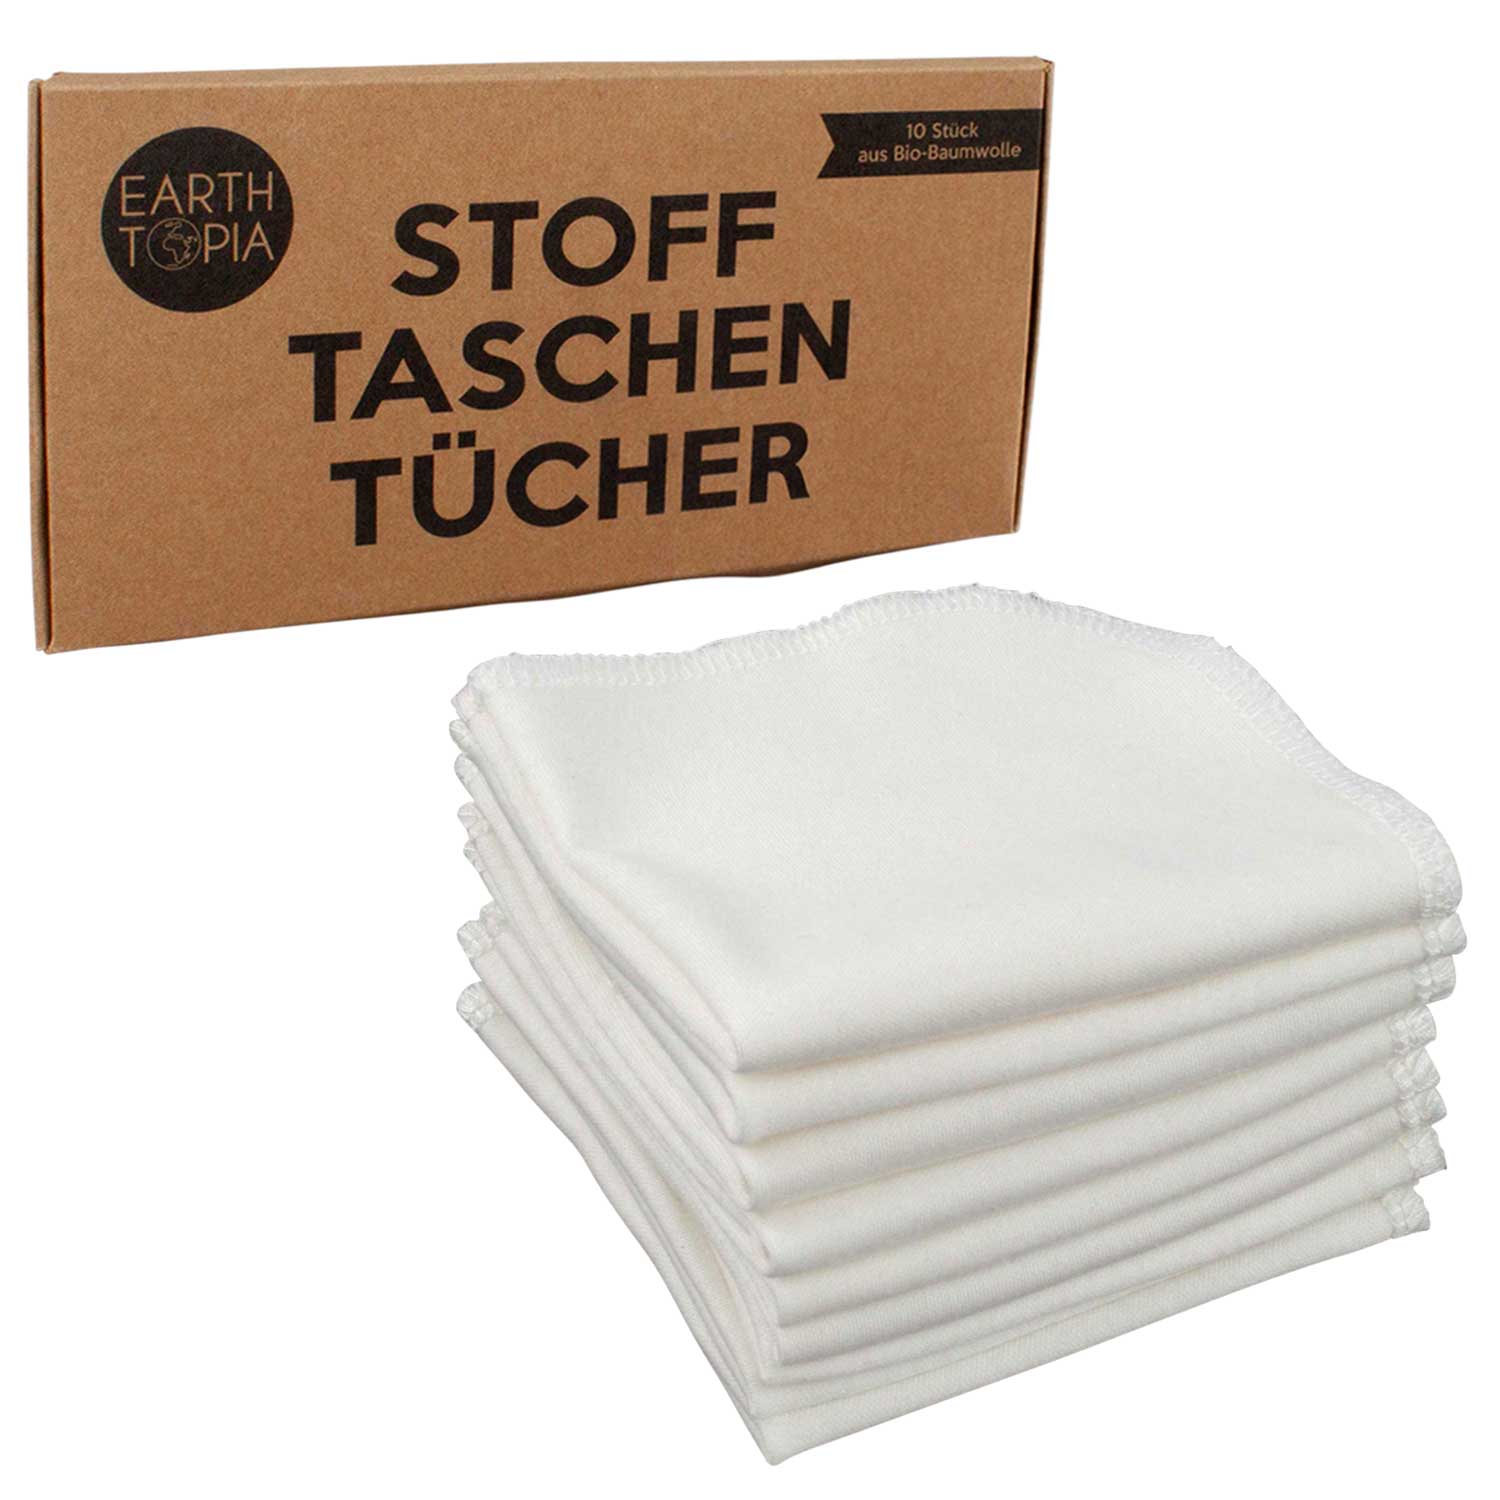 12pcs Stofftaschentücher Taschentücher aus 100% Bio-Baumwolle in 